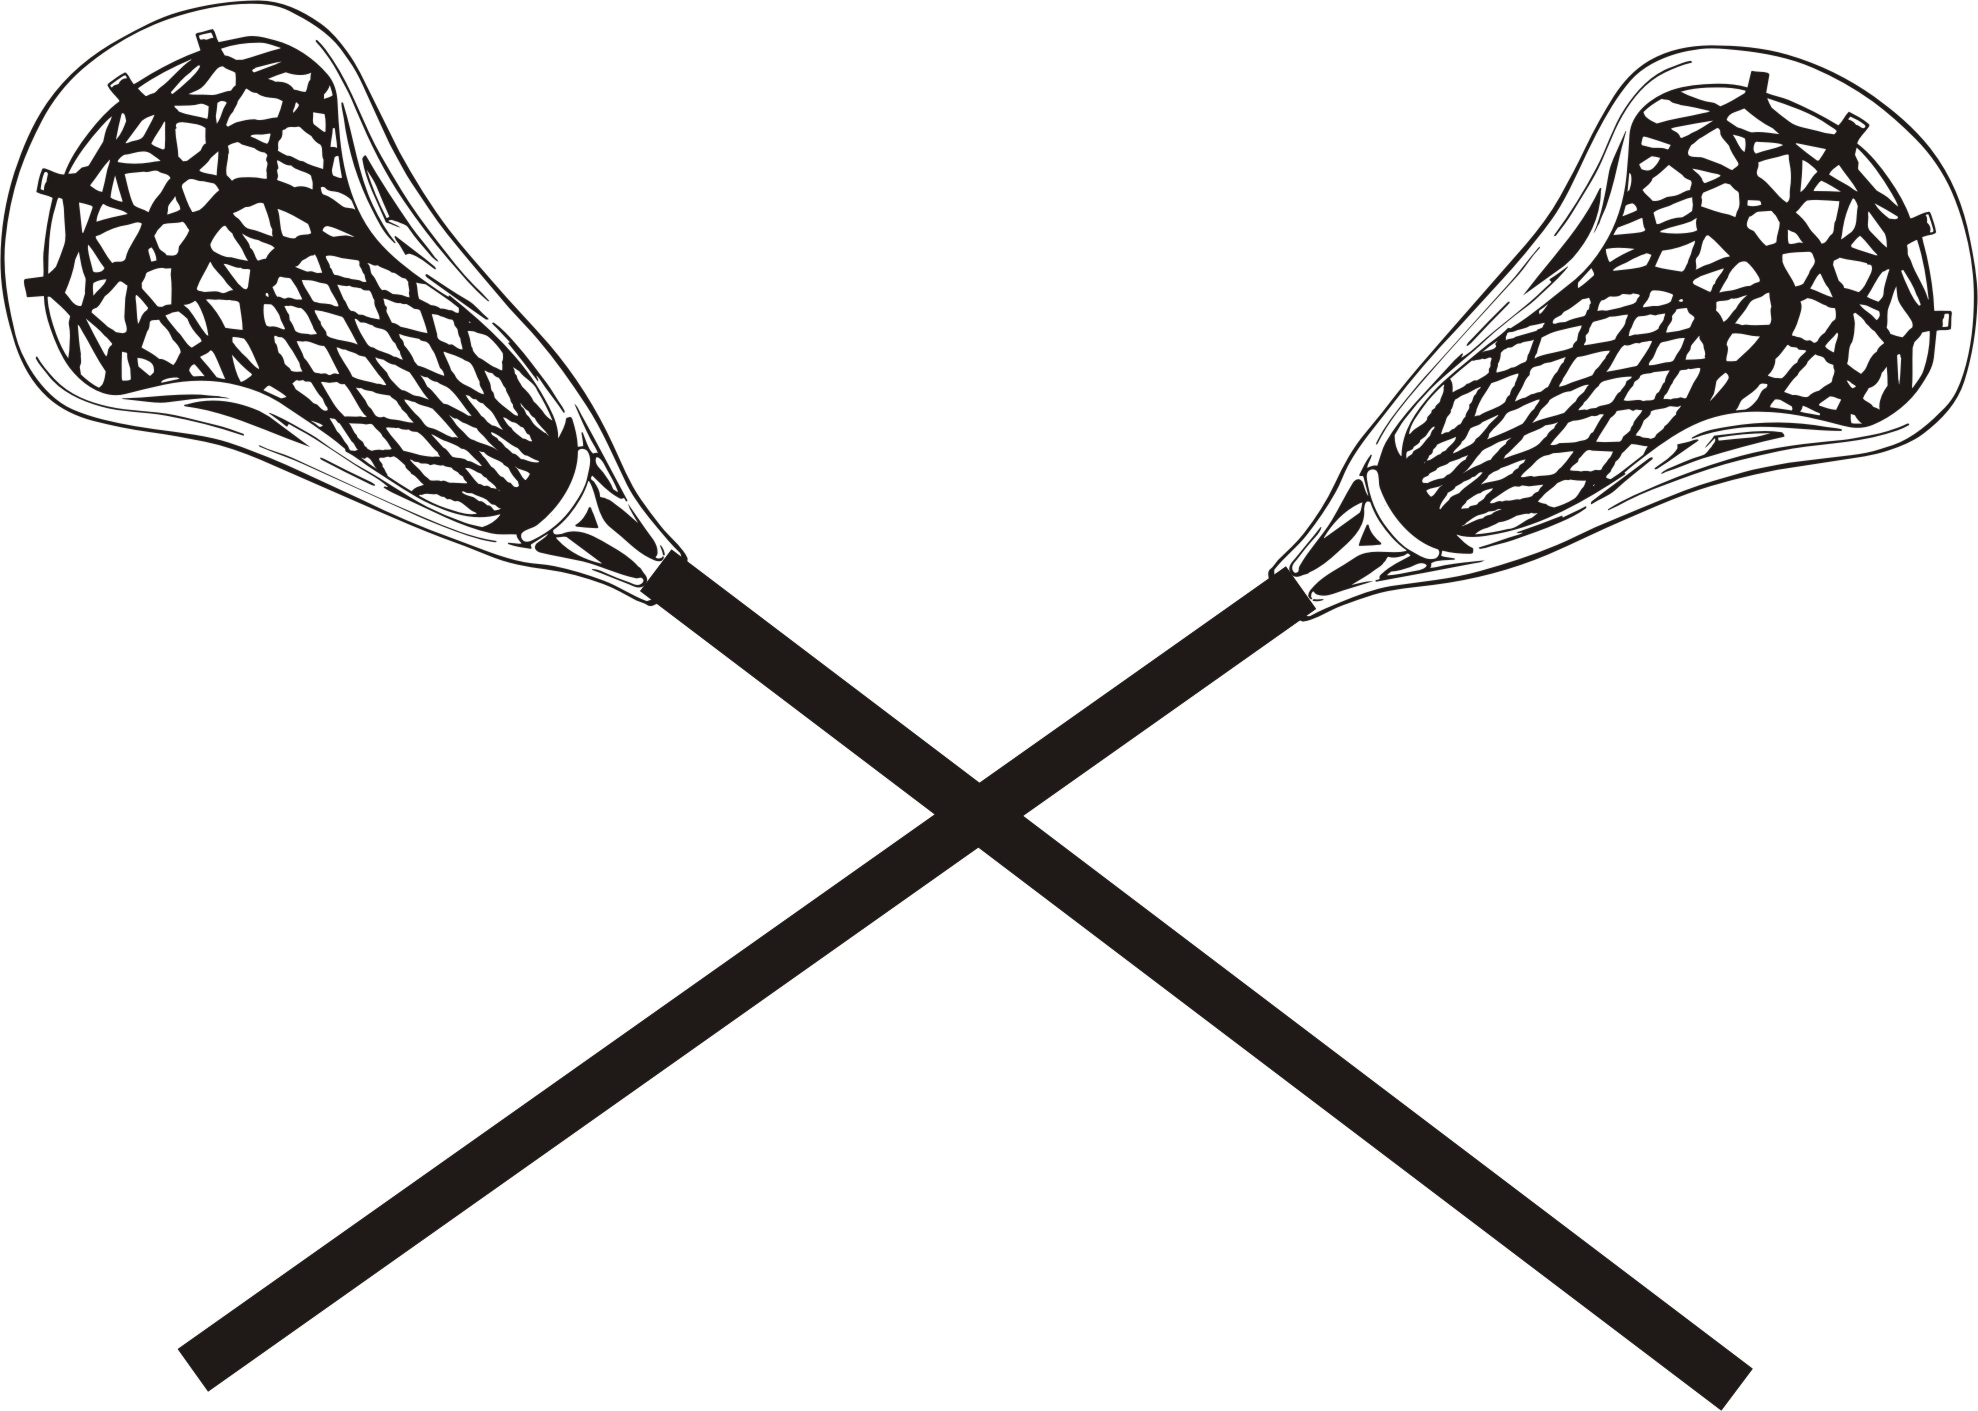 Lacrosse clip art images . - Lacrosse Stick Clip Art